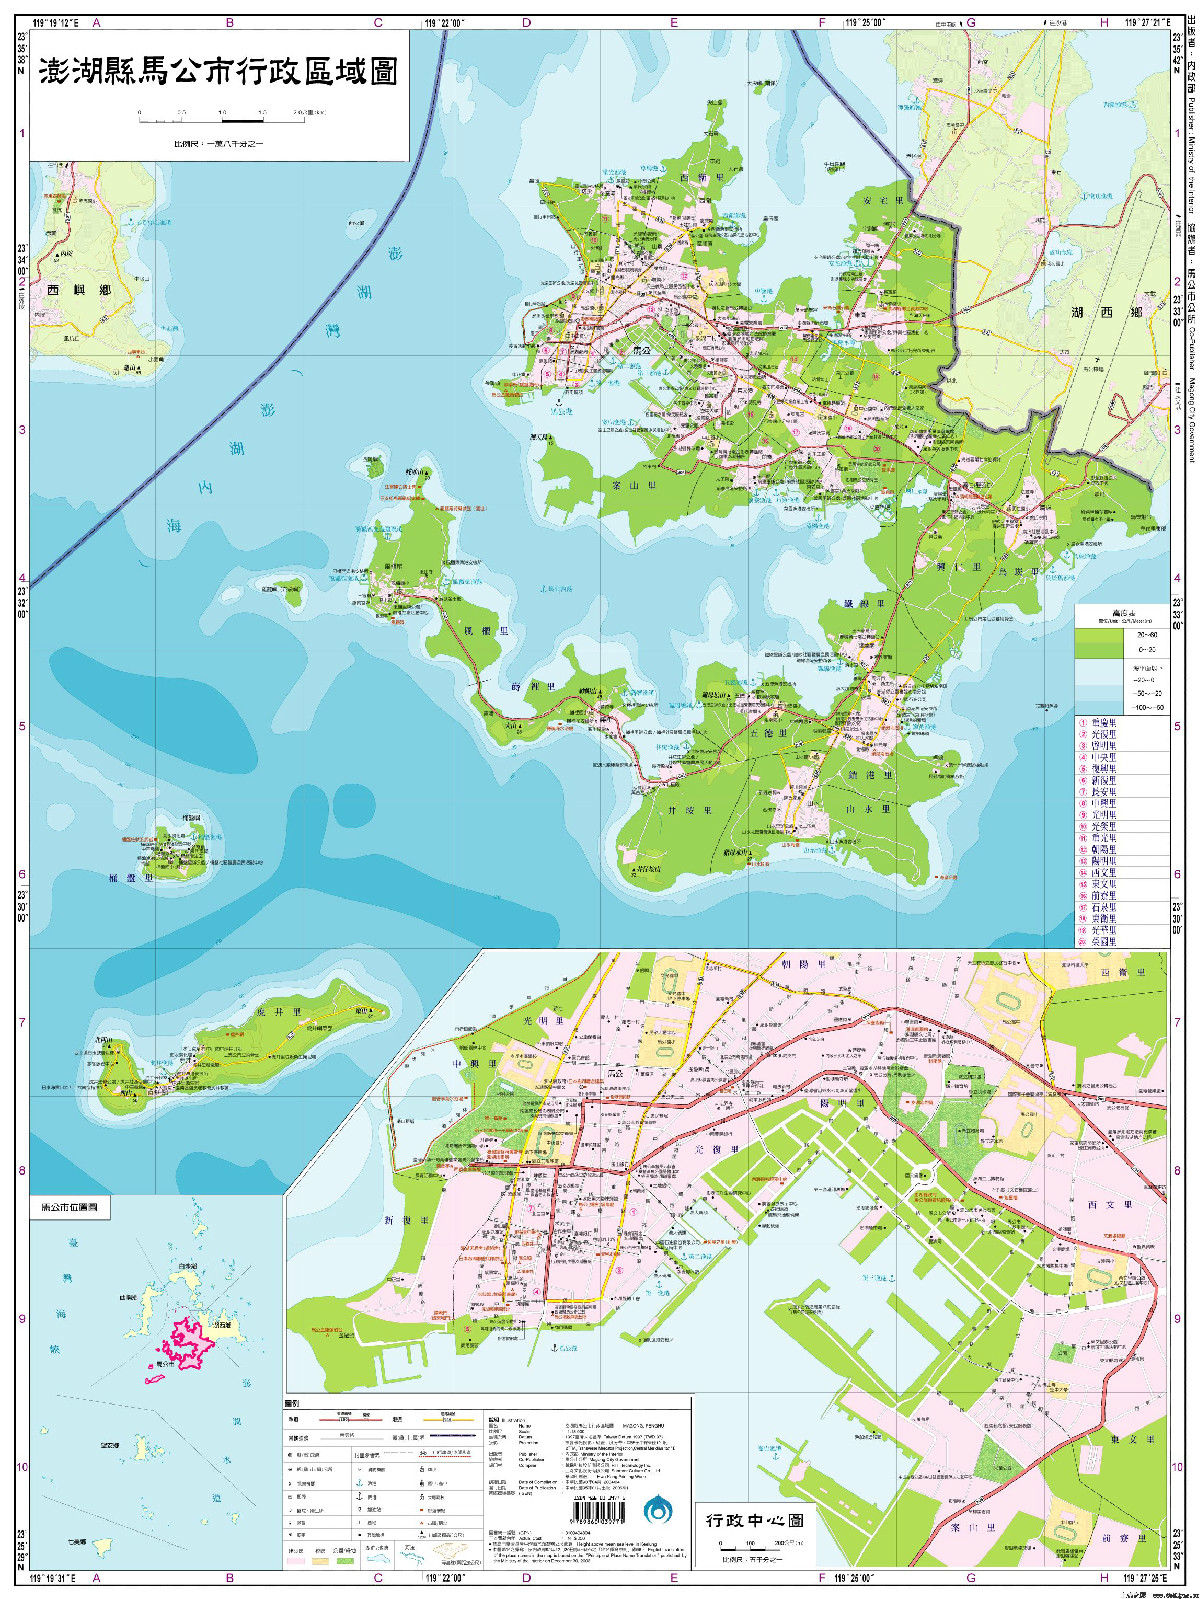 馬公市行政區域圖